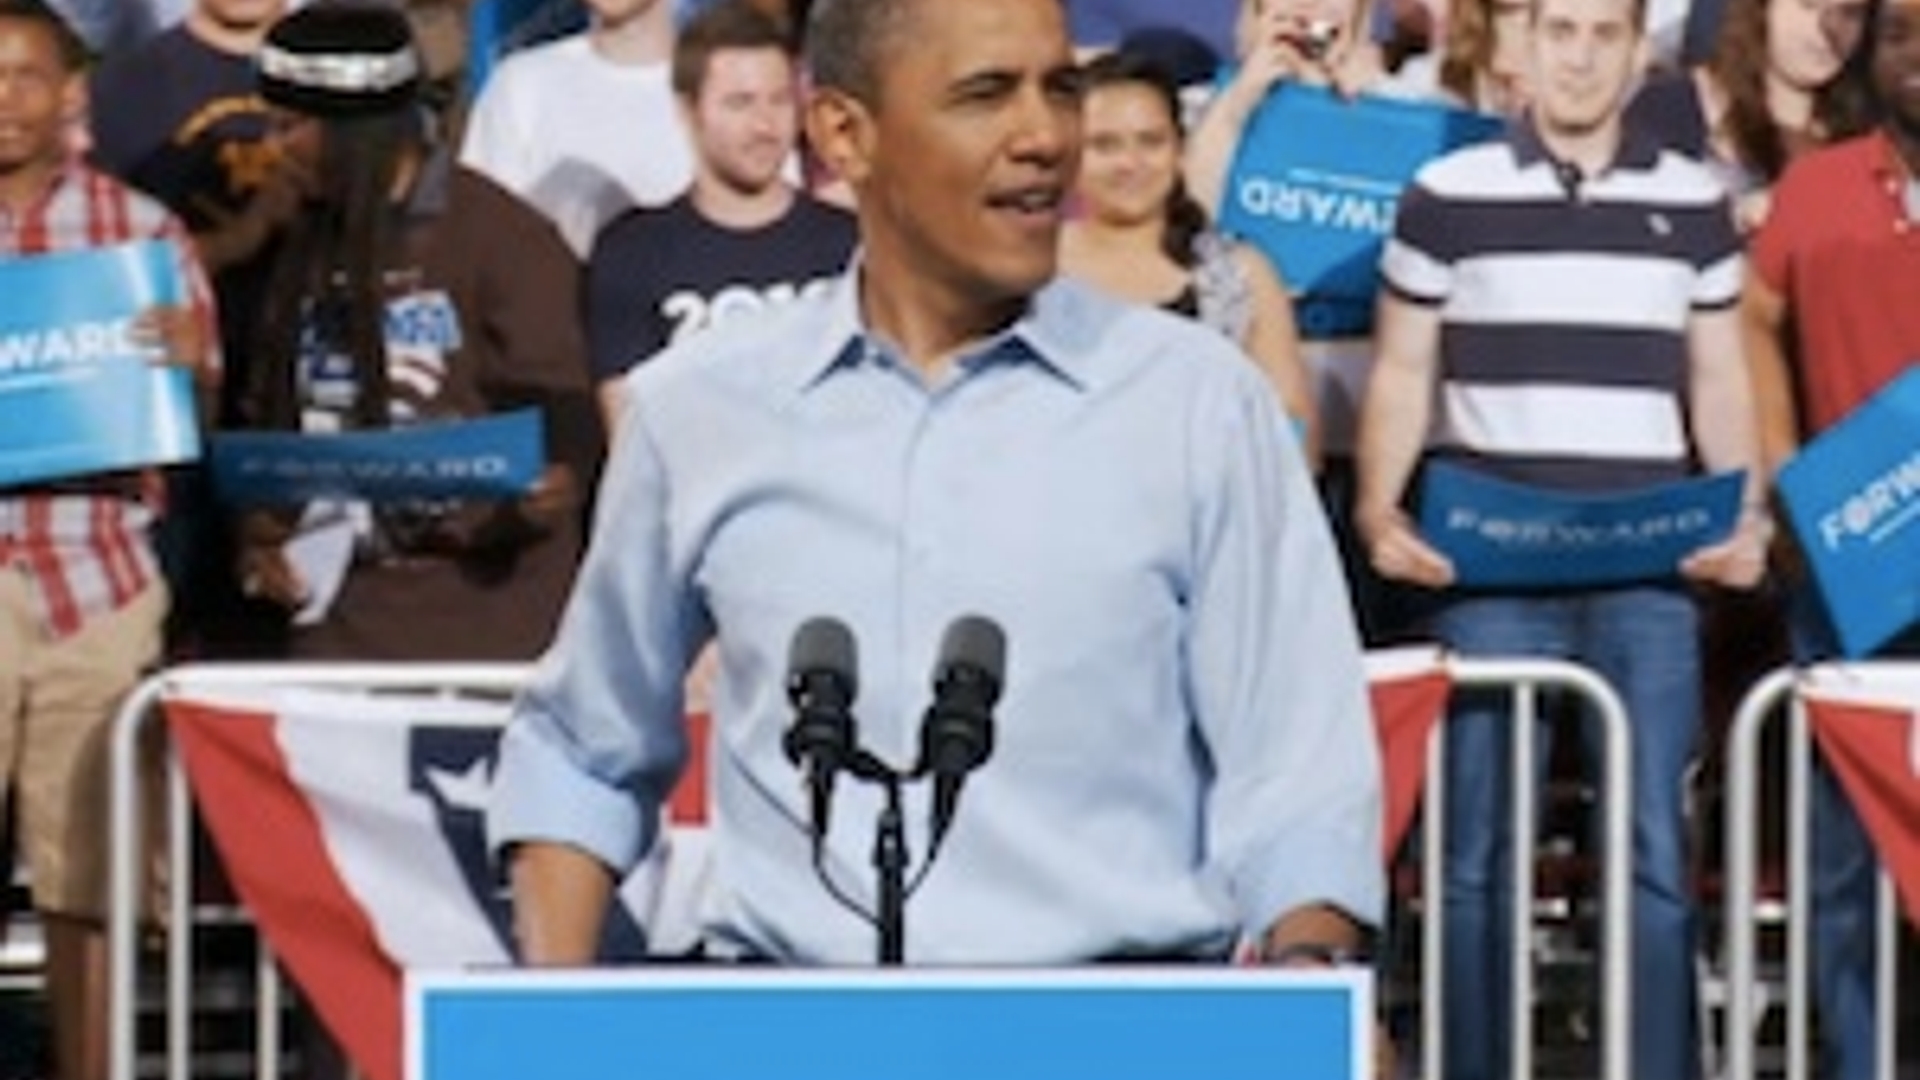 Obama300_02.jpg